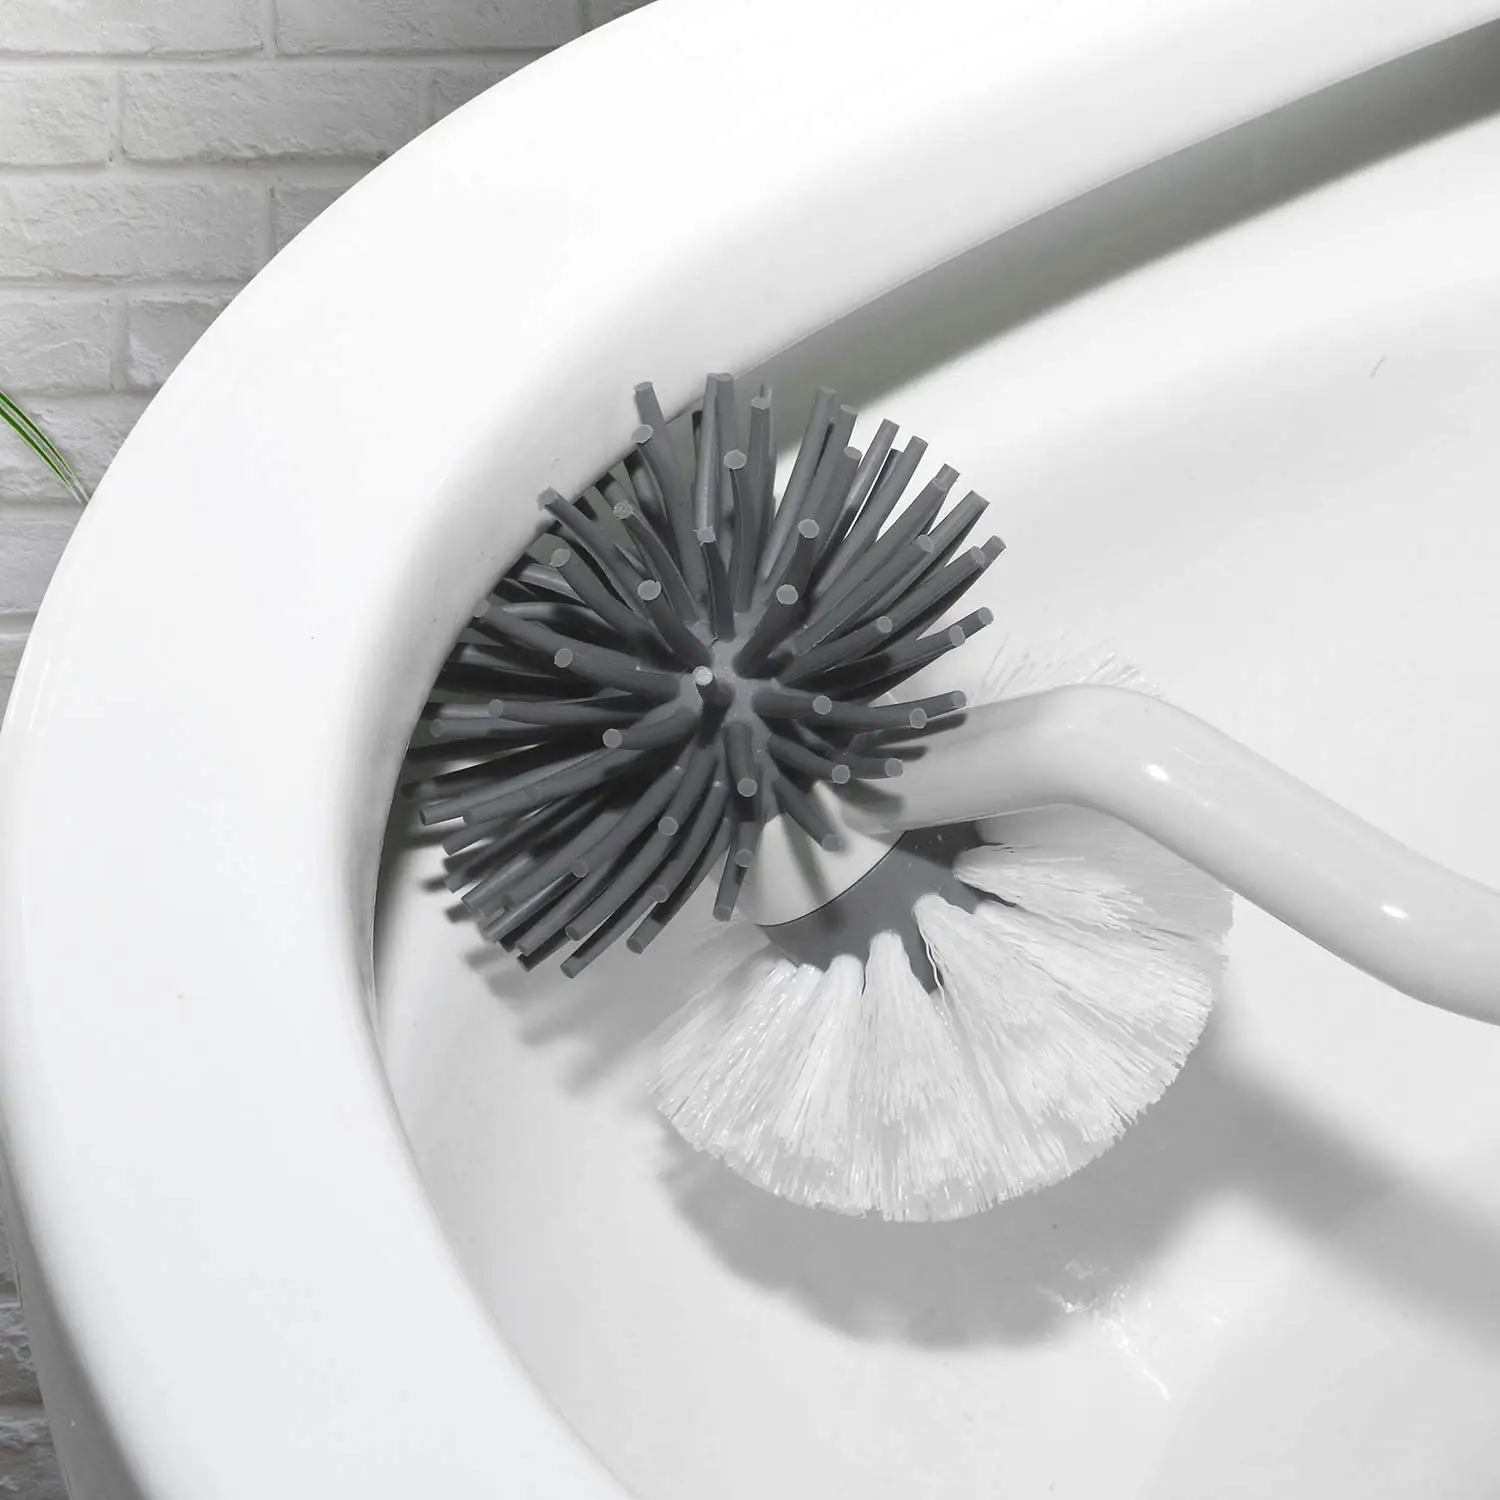 VIPao clean Badezimmer reinigung Doppel bürsten kopf Toiletten bürste und Halter